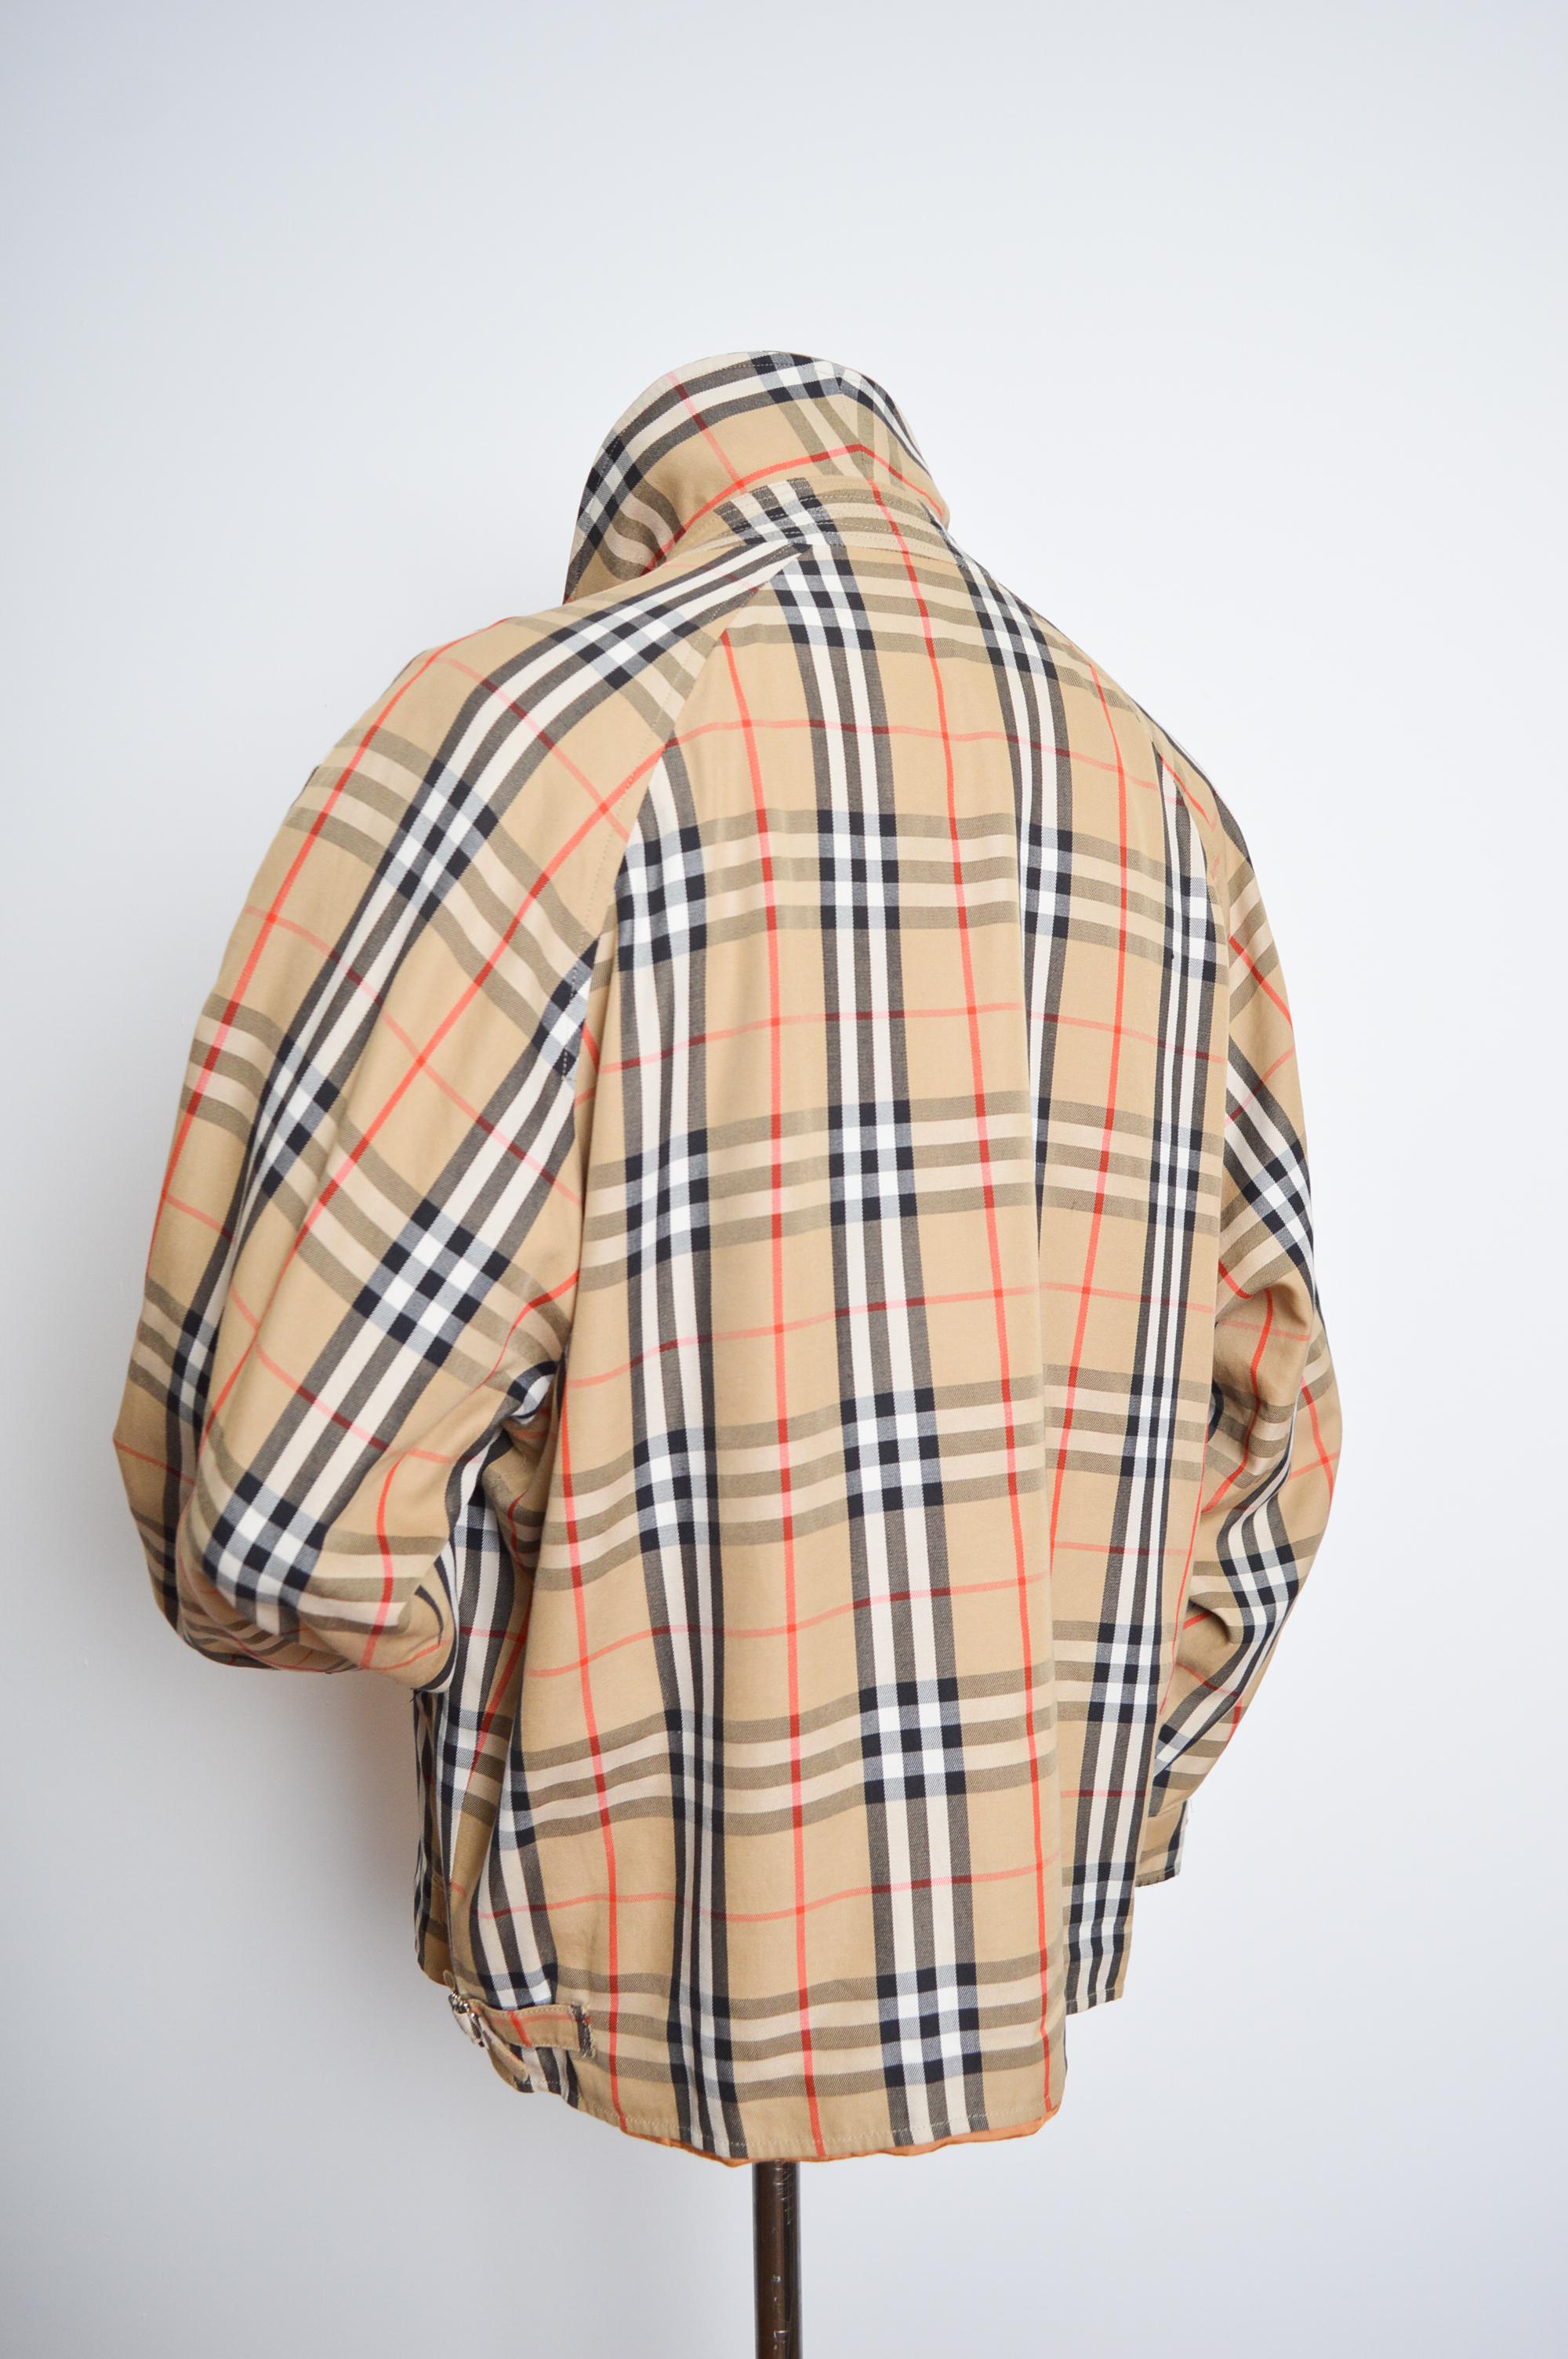 Superbe veste Vintage BURBERRY's of London, Harrington, dans l'iconique tissu à carreaux Nova.
Circa 1980. 

FABRIQUÉ EN ANGLETERRE.  

Caractéristiques : Coupe ample oversize, manches longues, fermeture à glissière centrale, 2 poches sur les